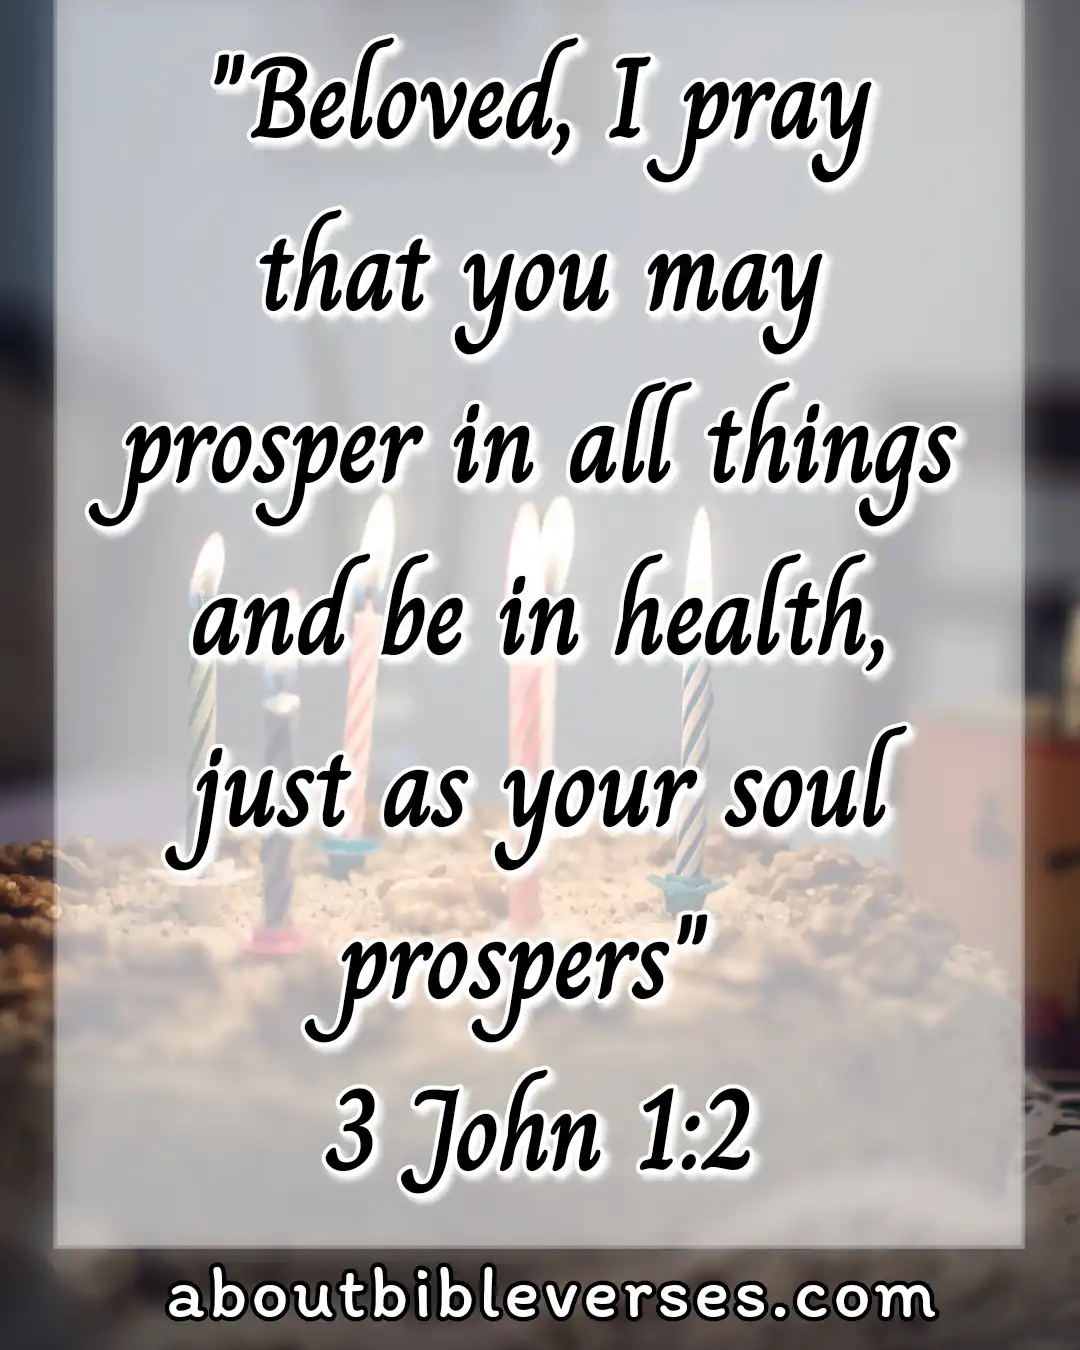 today bible verse (3 John 1:2)